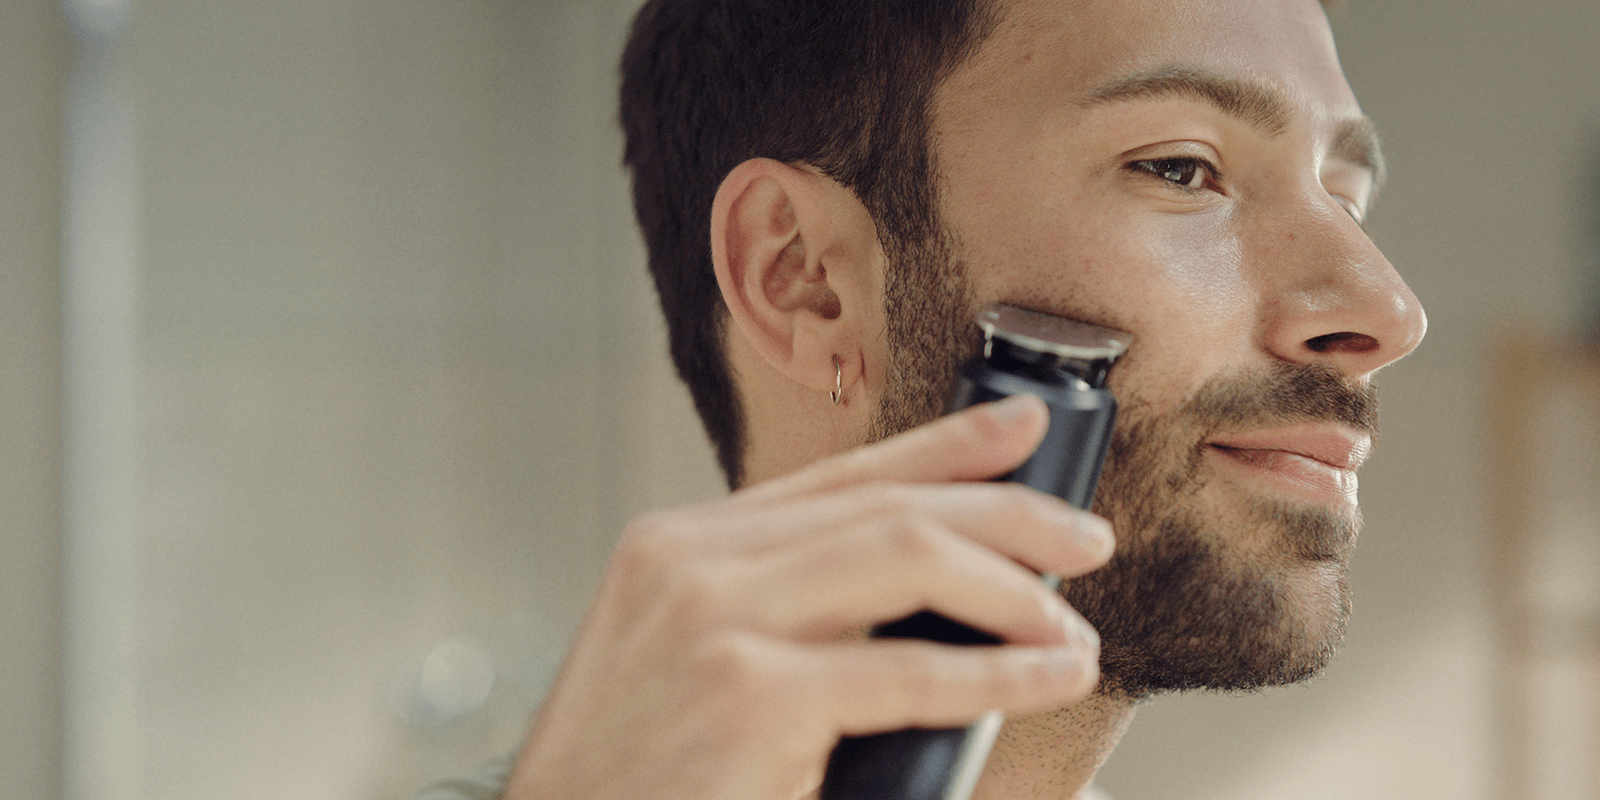 Beard trimmer